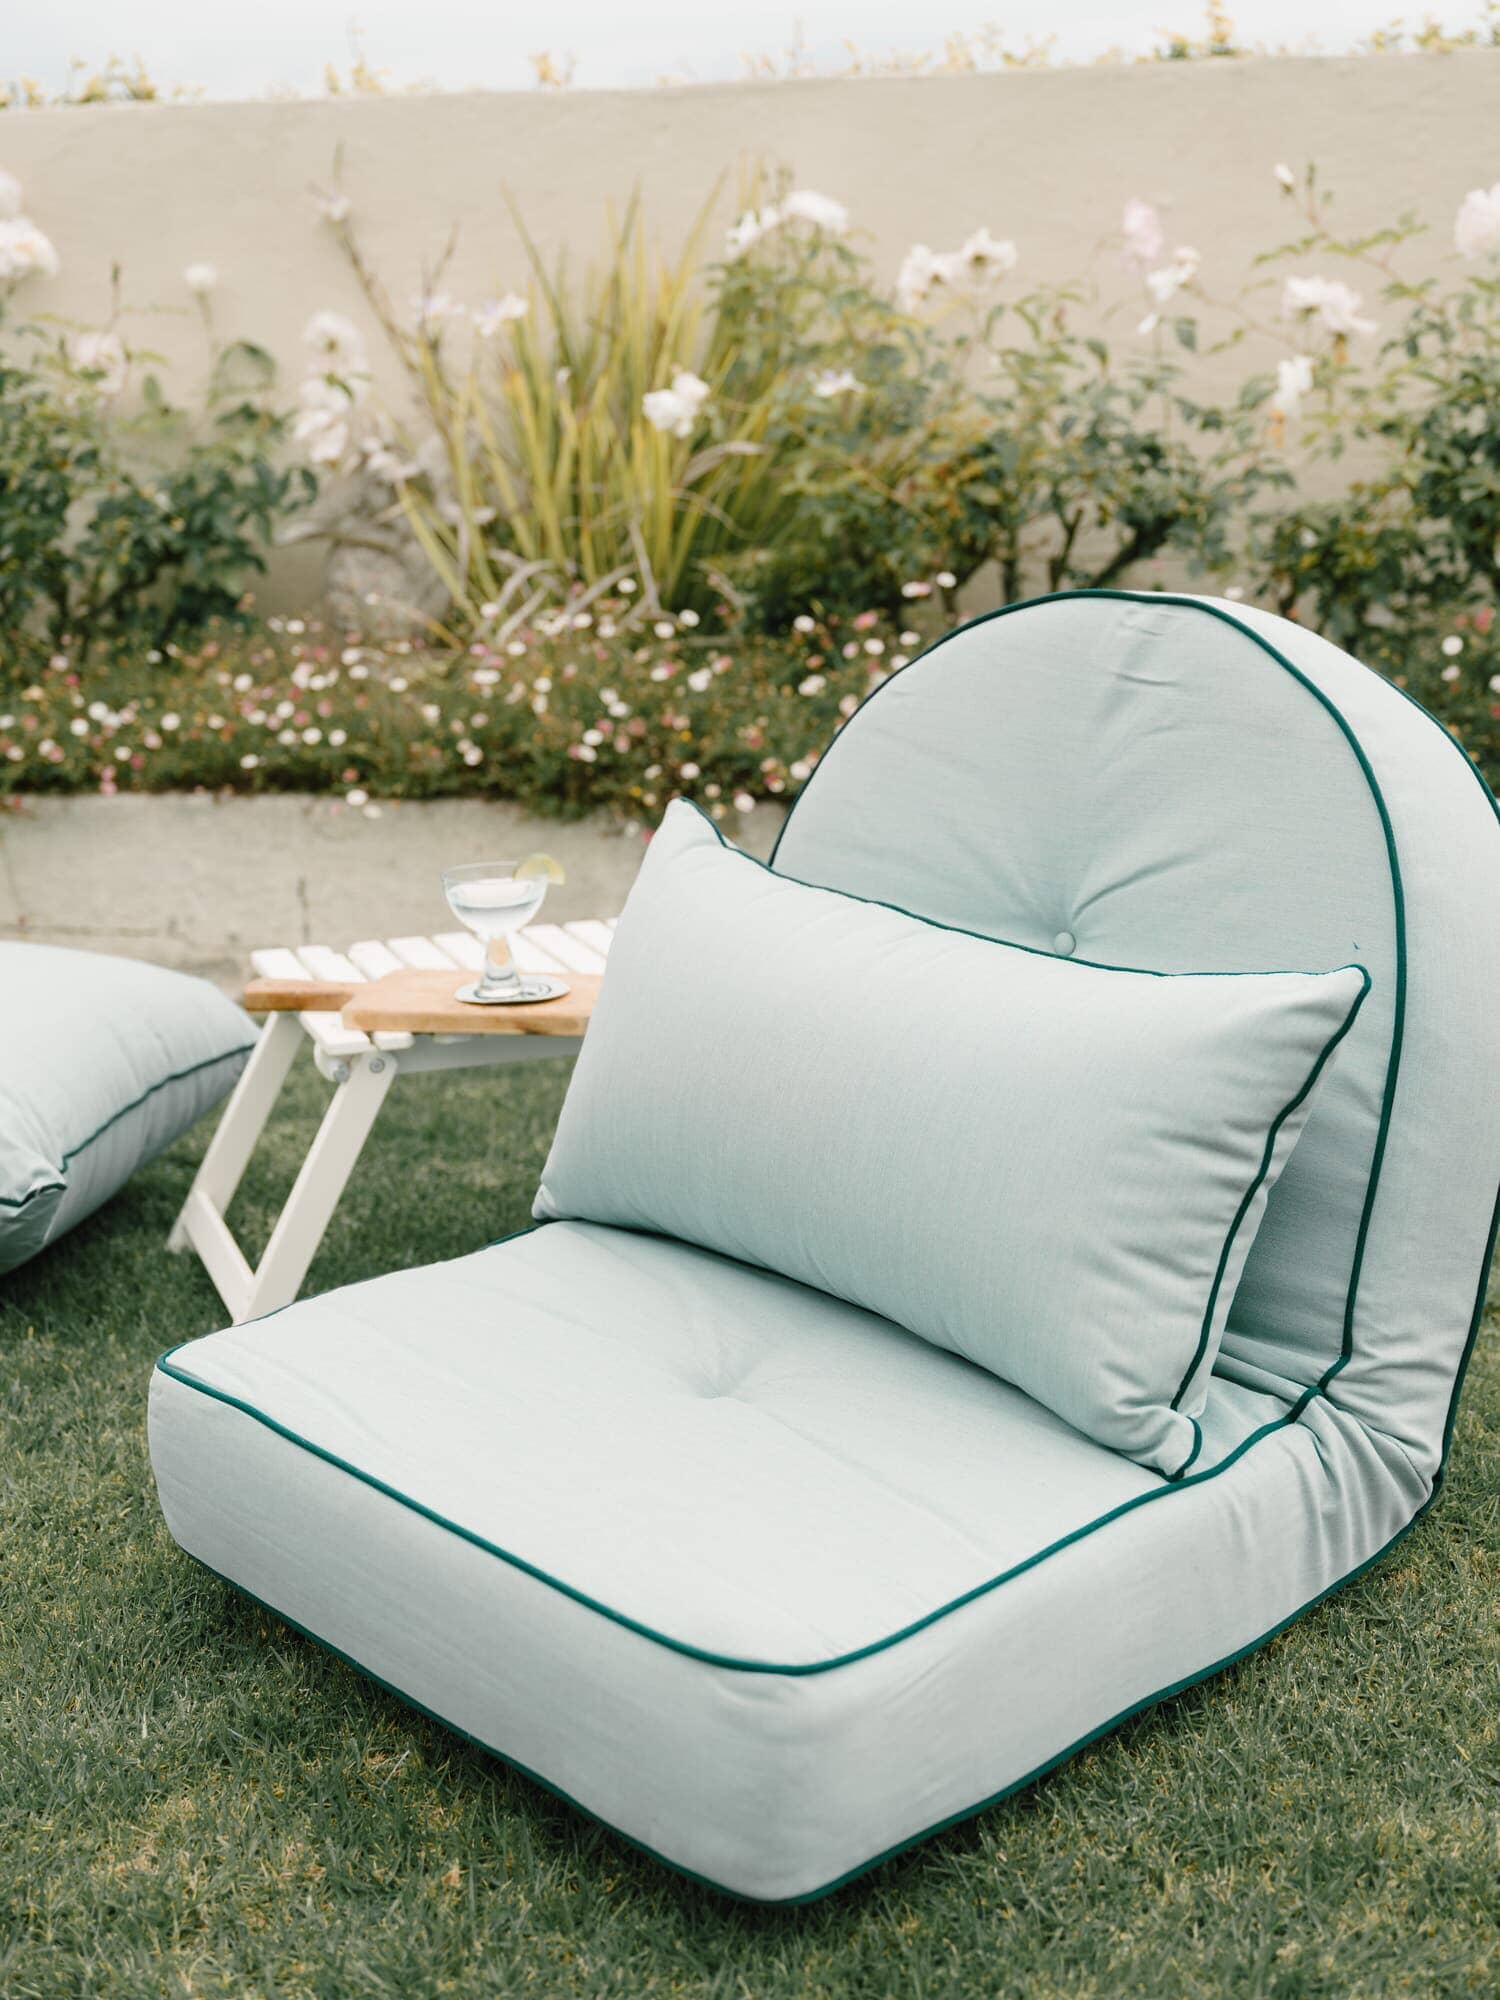 Throw pillow on reclining pillow lounger in a garden setting